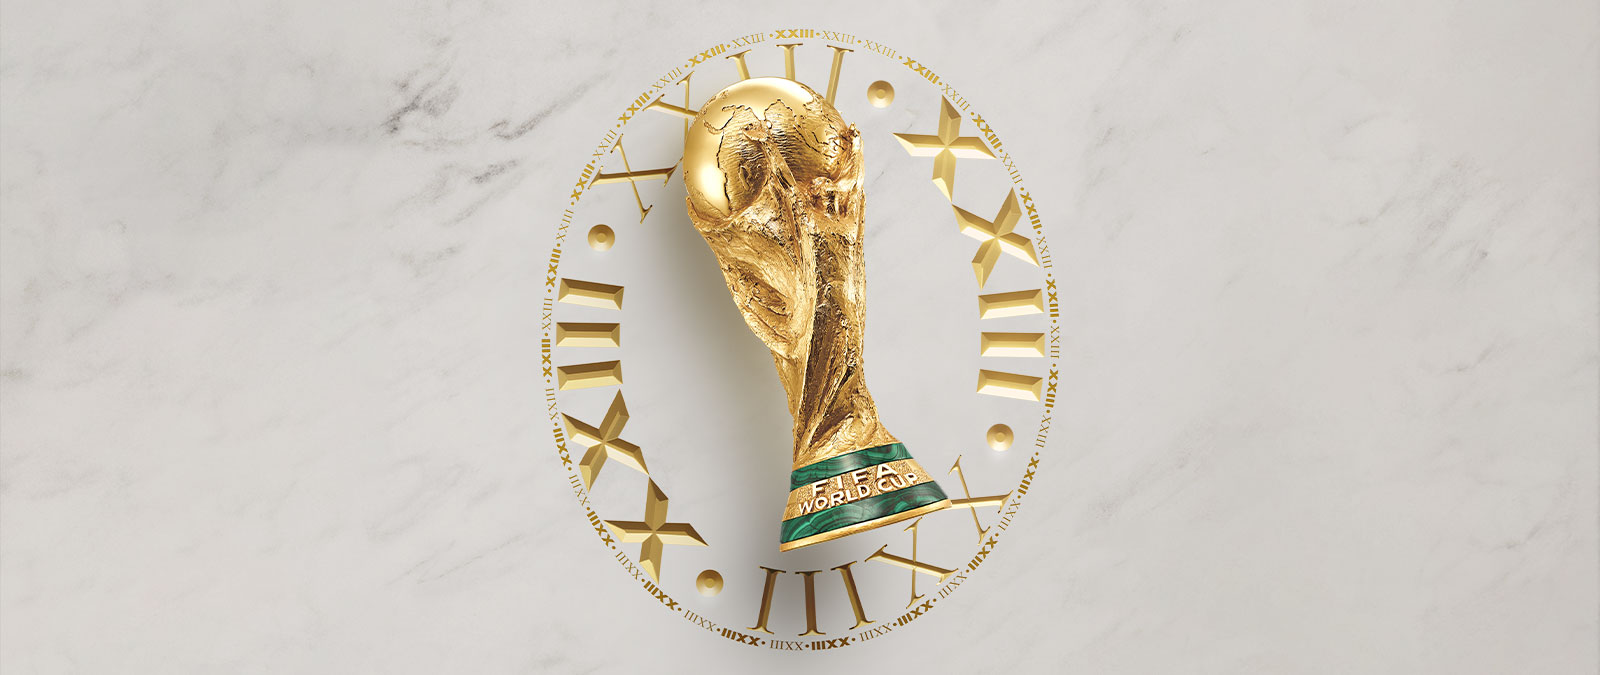 Die Trophäe der FIFA Fussball-Weltmeisterschaft mit goldgeprägten römischen Ziffern der Nummer 23 rundherum.